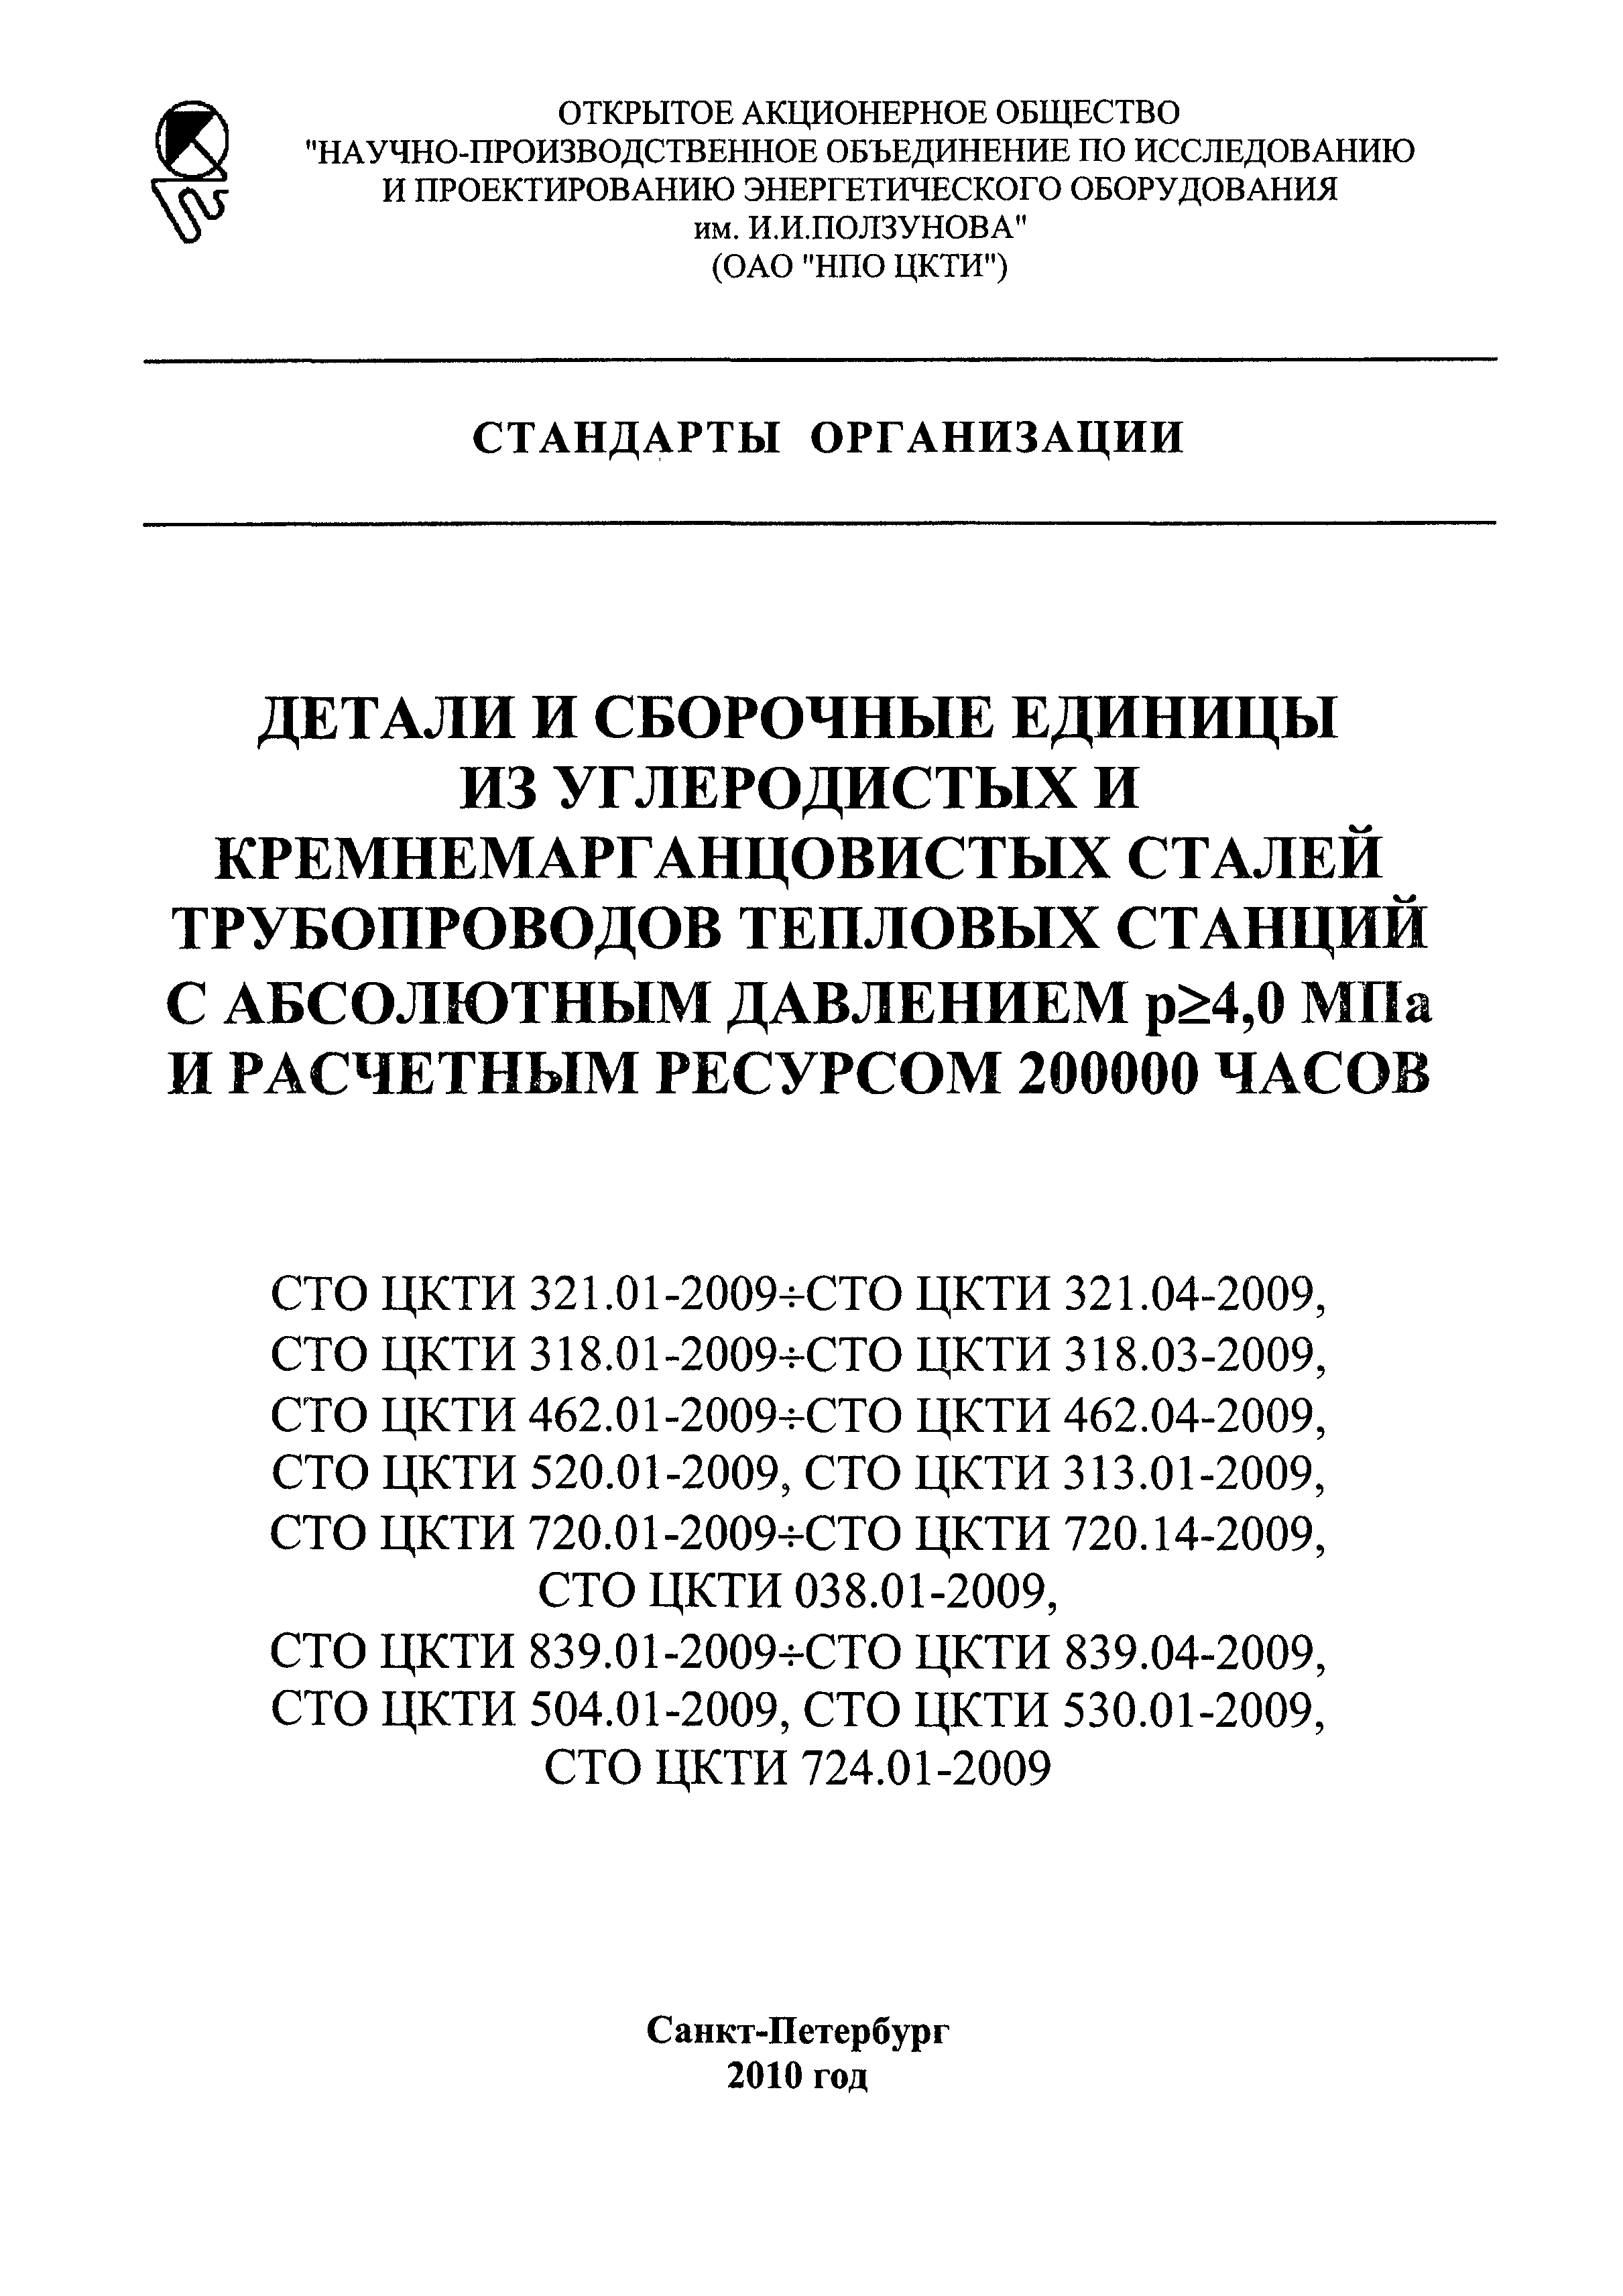 СТО ЦКТИ 720.03-2009